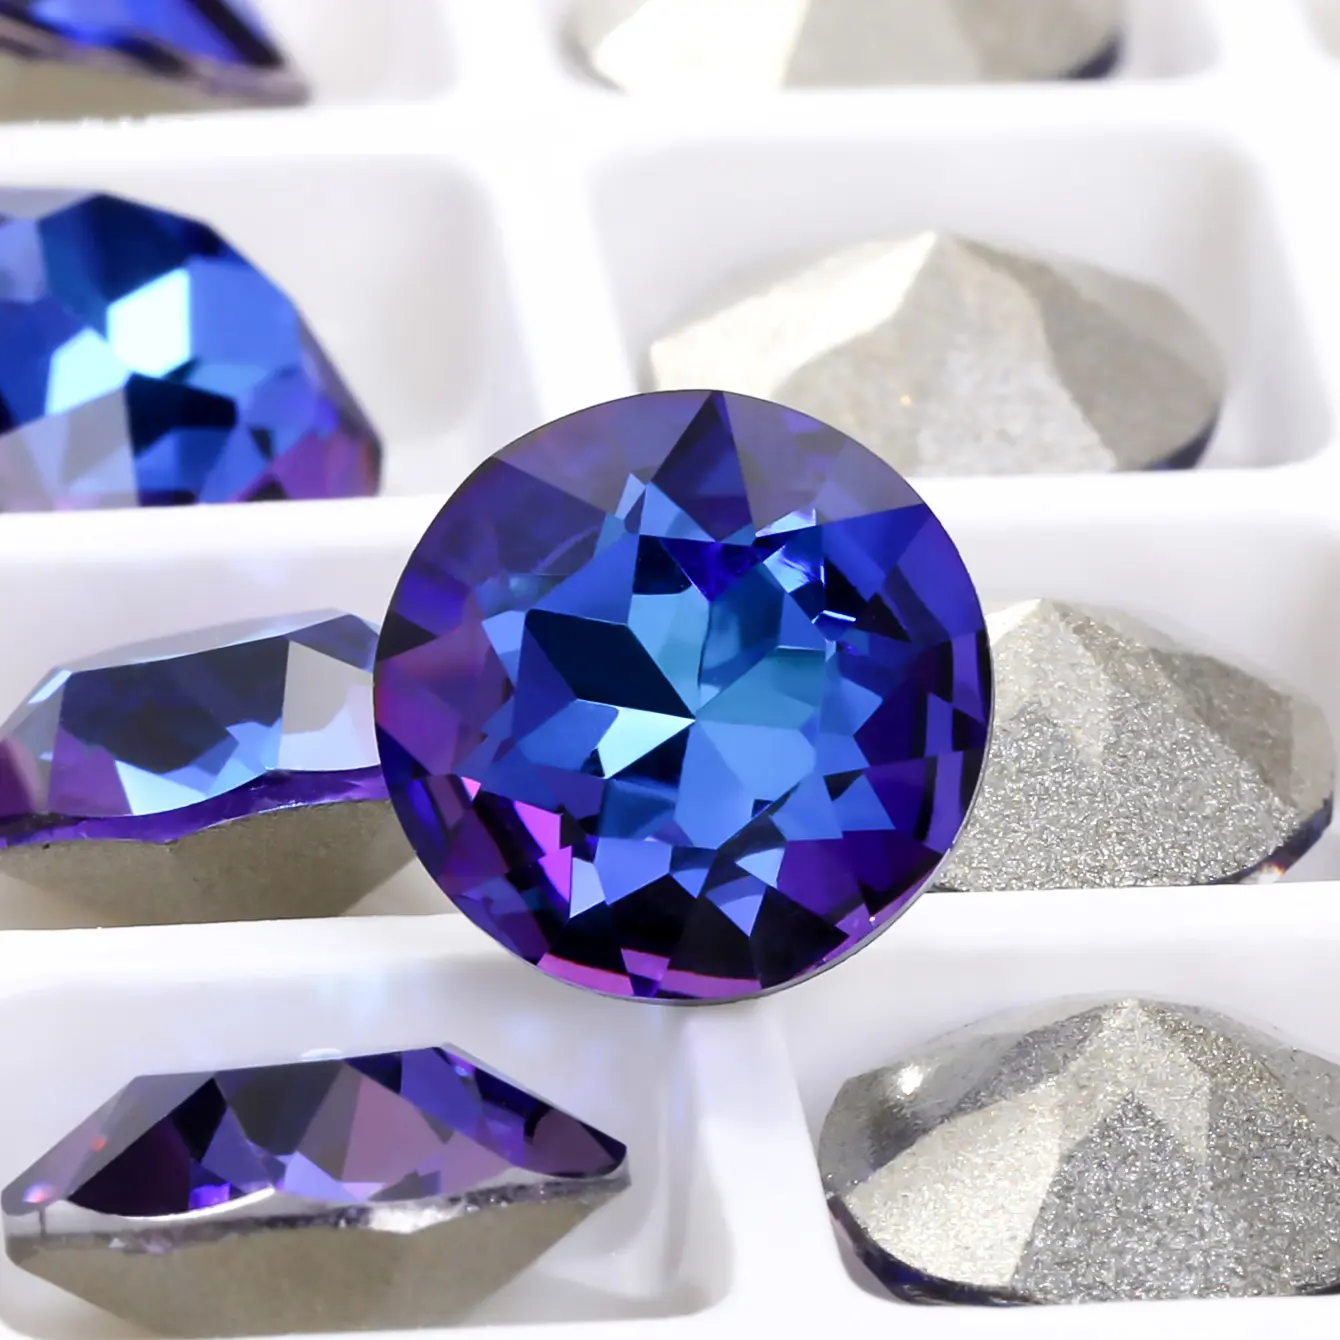 Xichuan de piedras preciosas de pointback k9 de cristaled piedras artesanía joyería encontrar bricolaje accesorios de decoración de la Ronda de diamantes de imitación